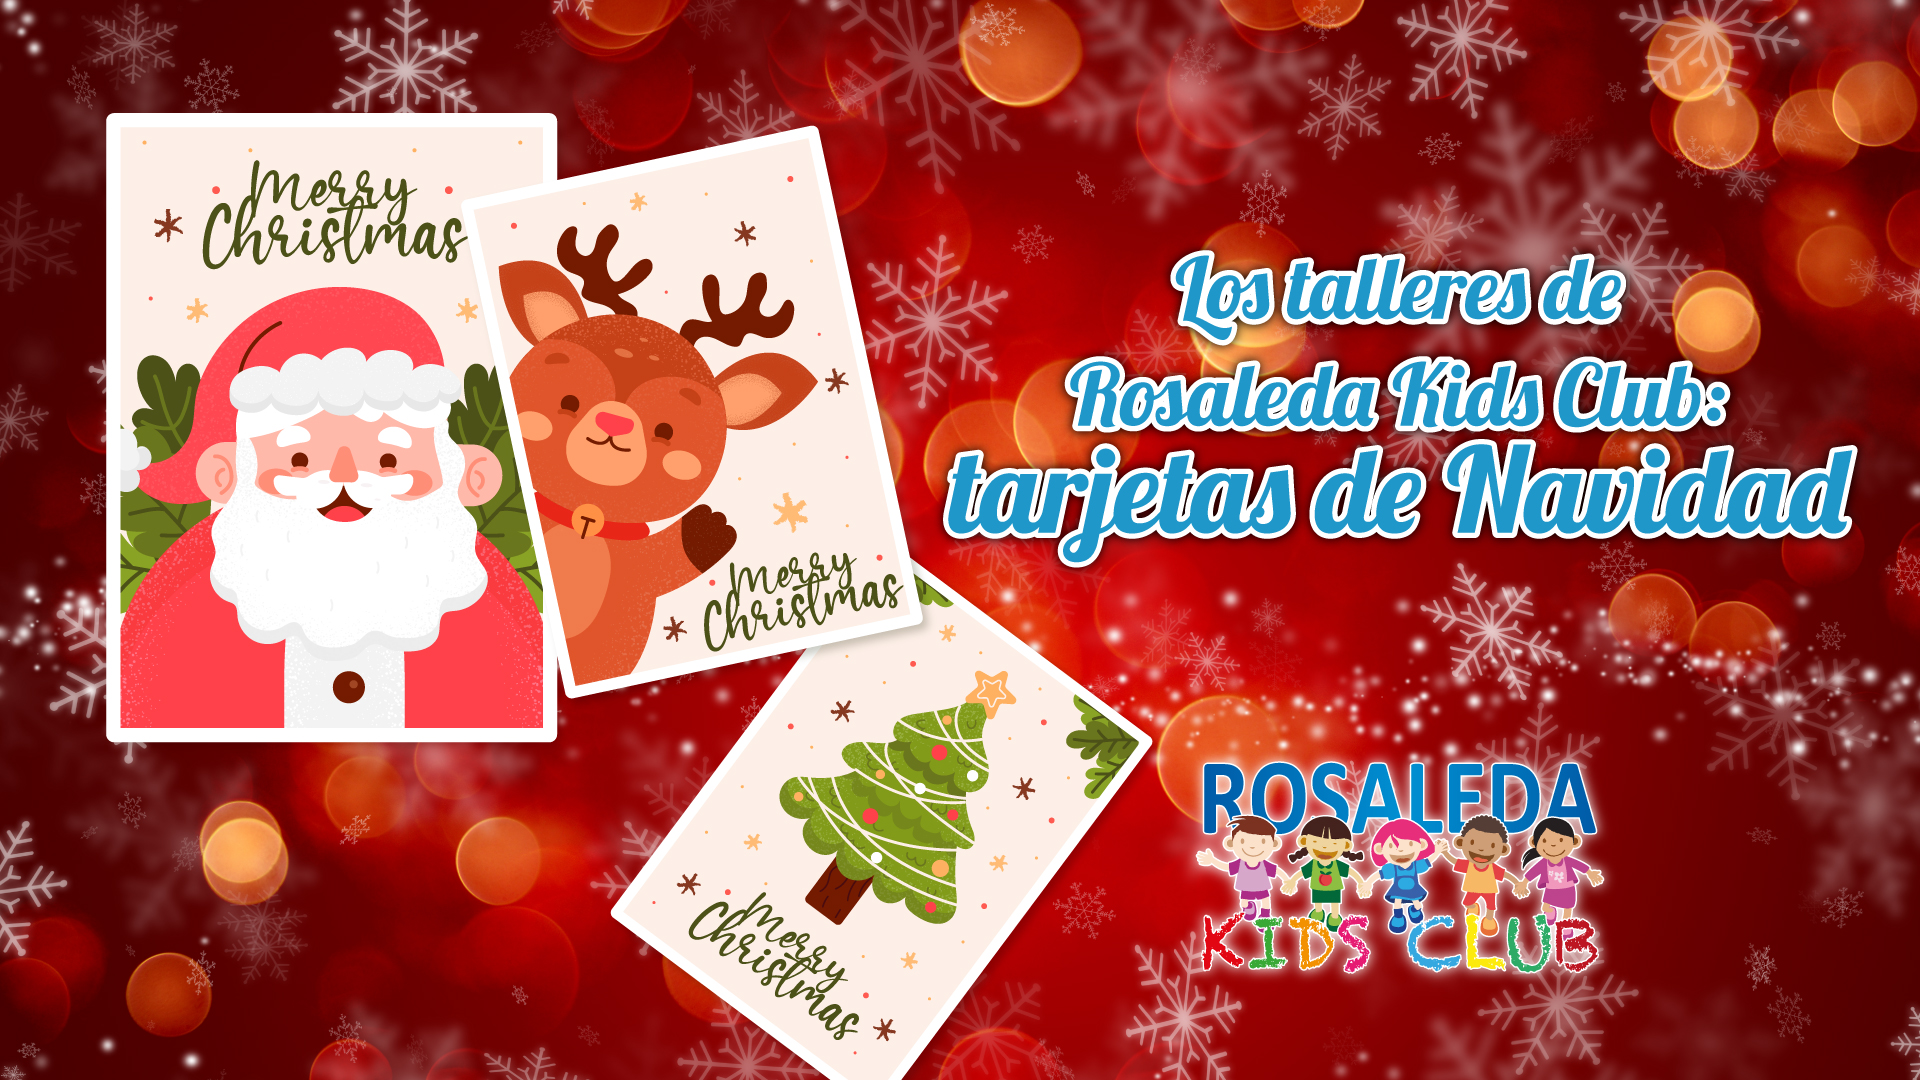 Las talleres de Rosaleda Kids Club: tarjetas de Navidad